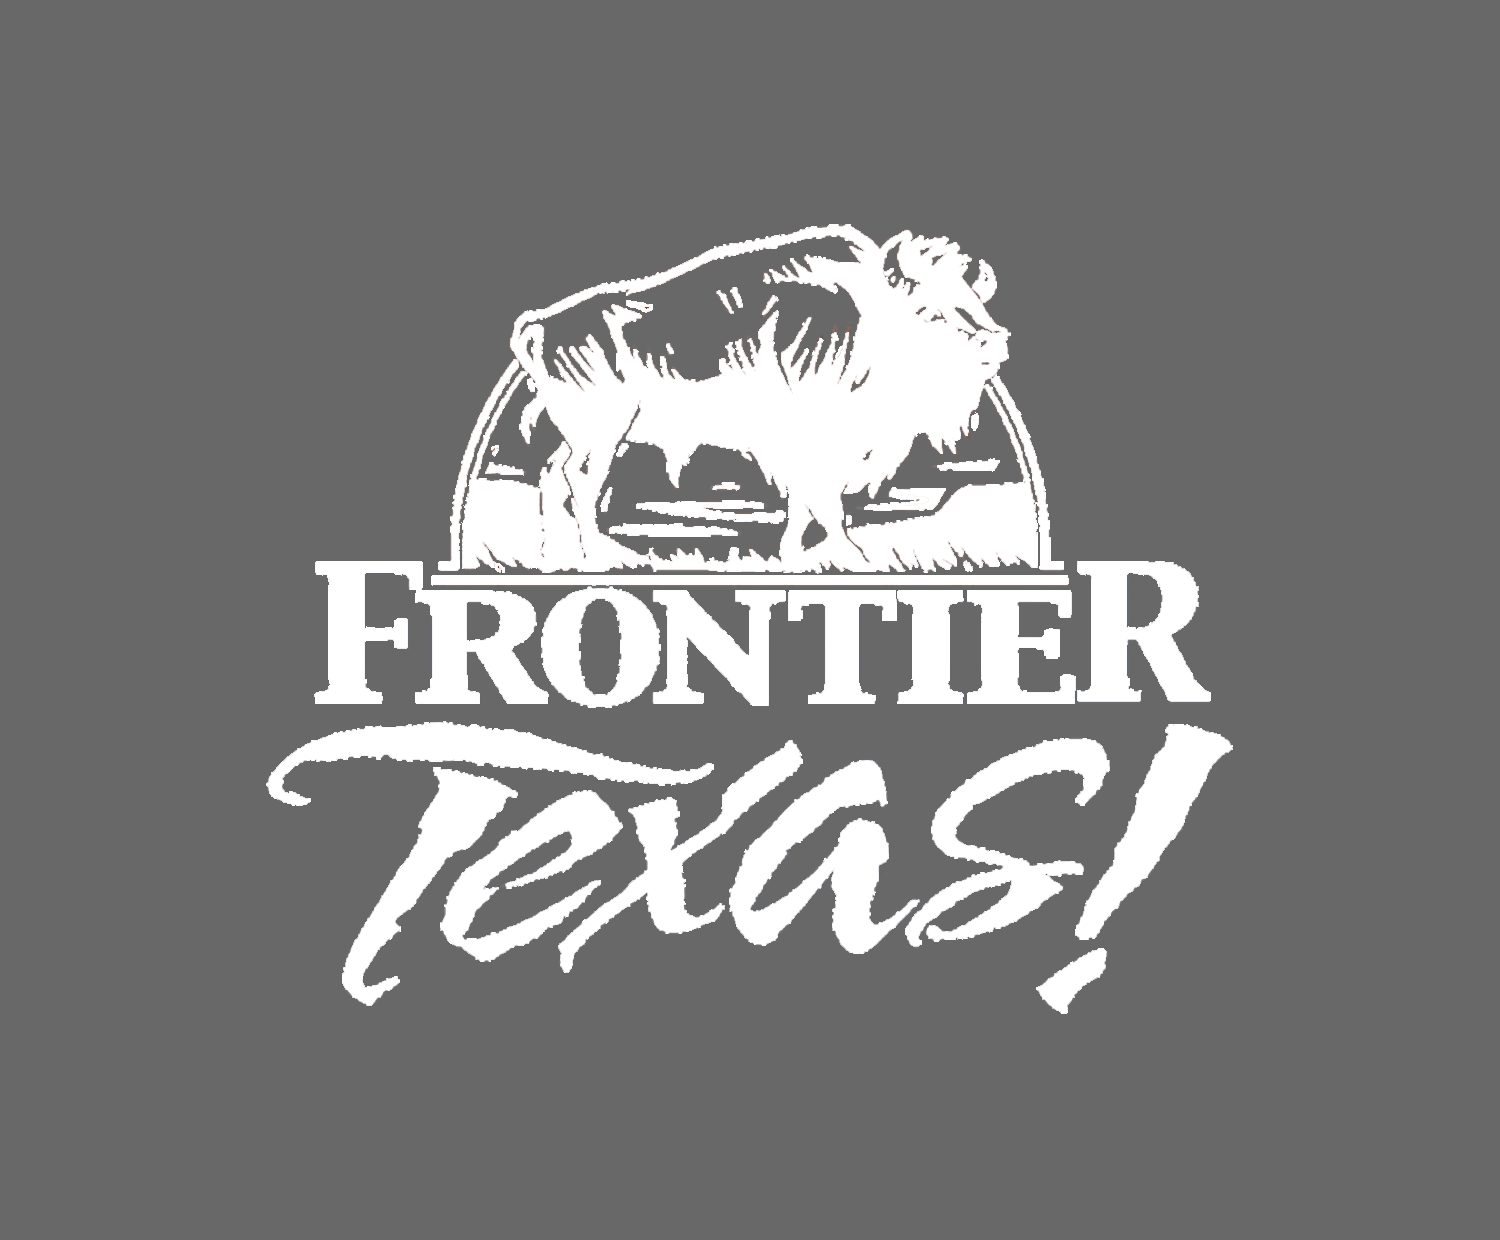 Frontier Texas